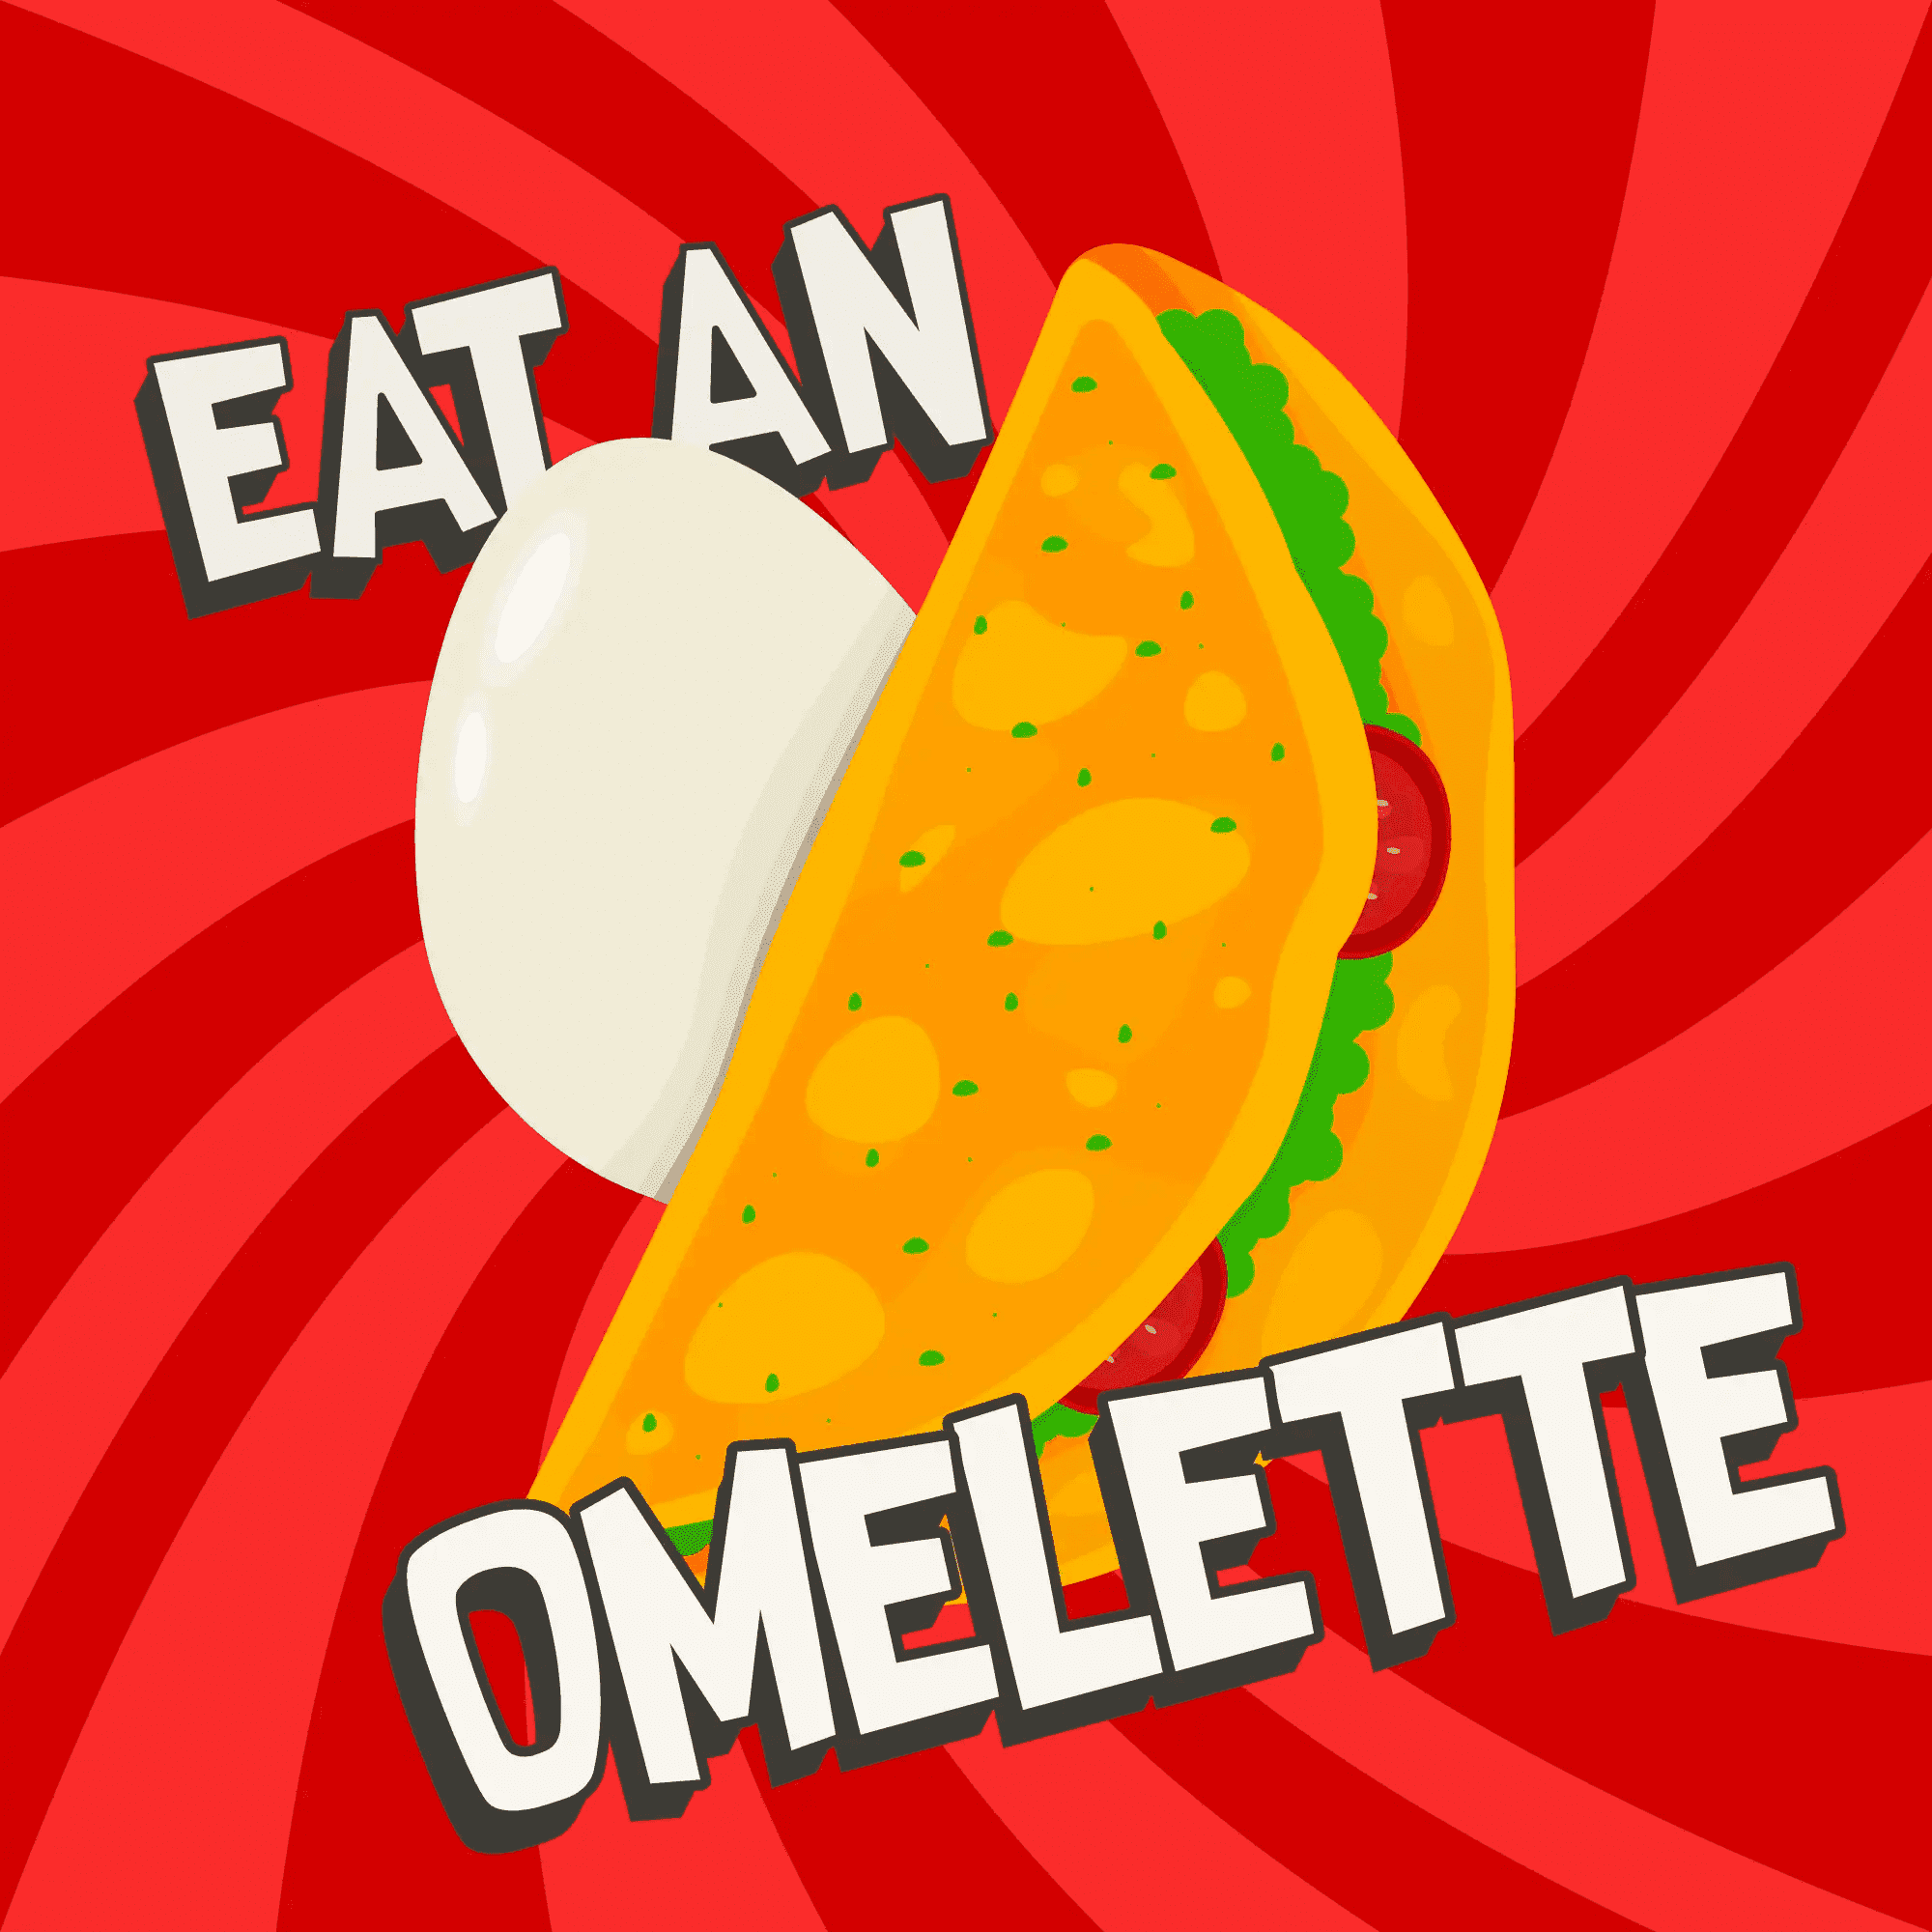 Eat an Omelette